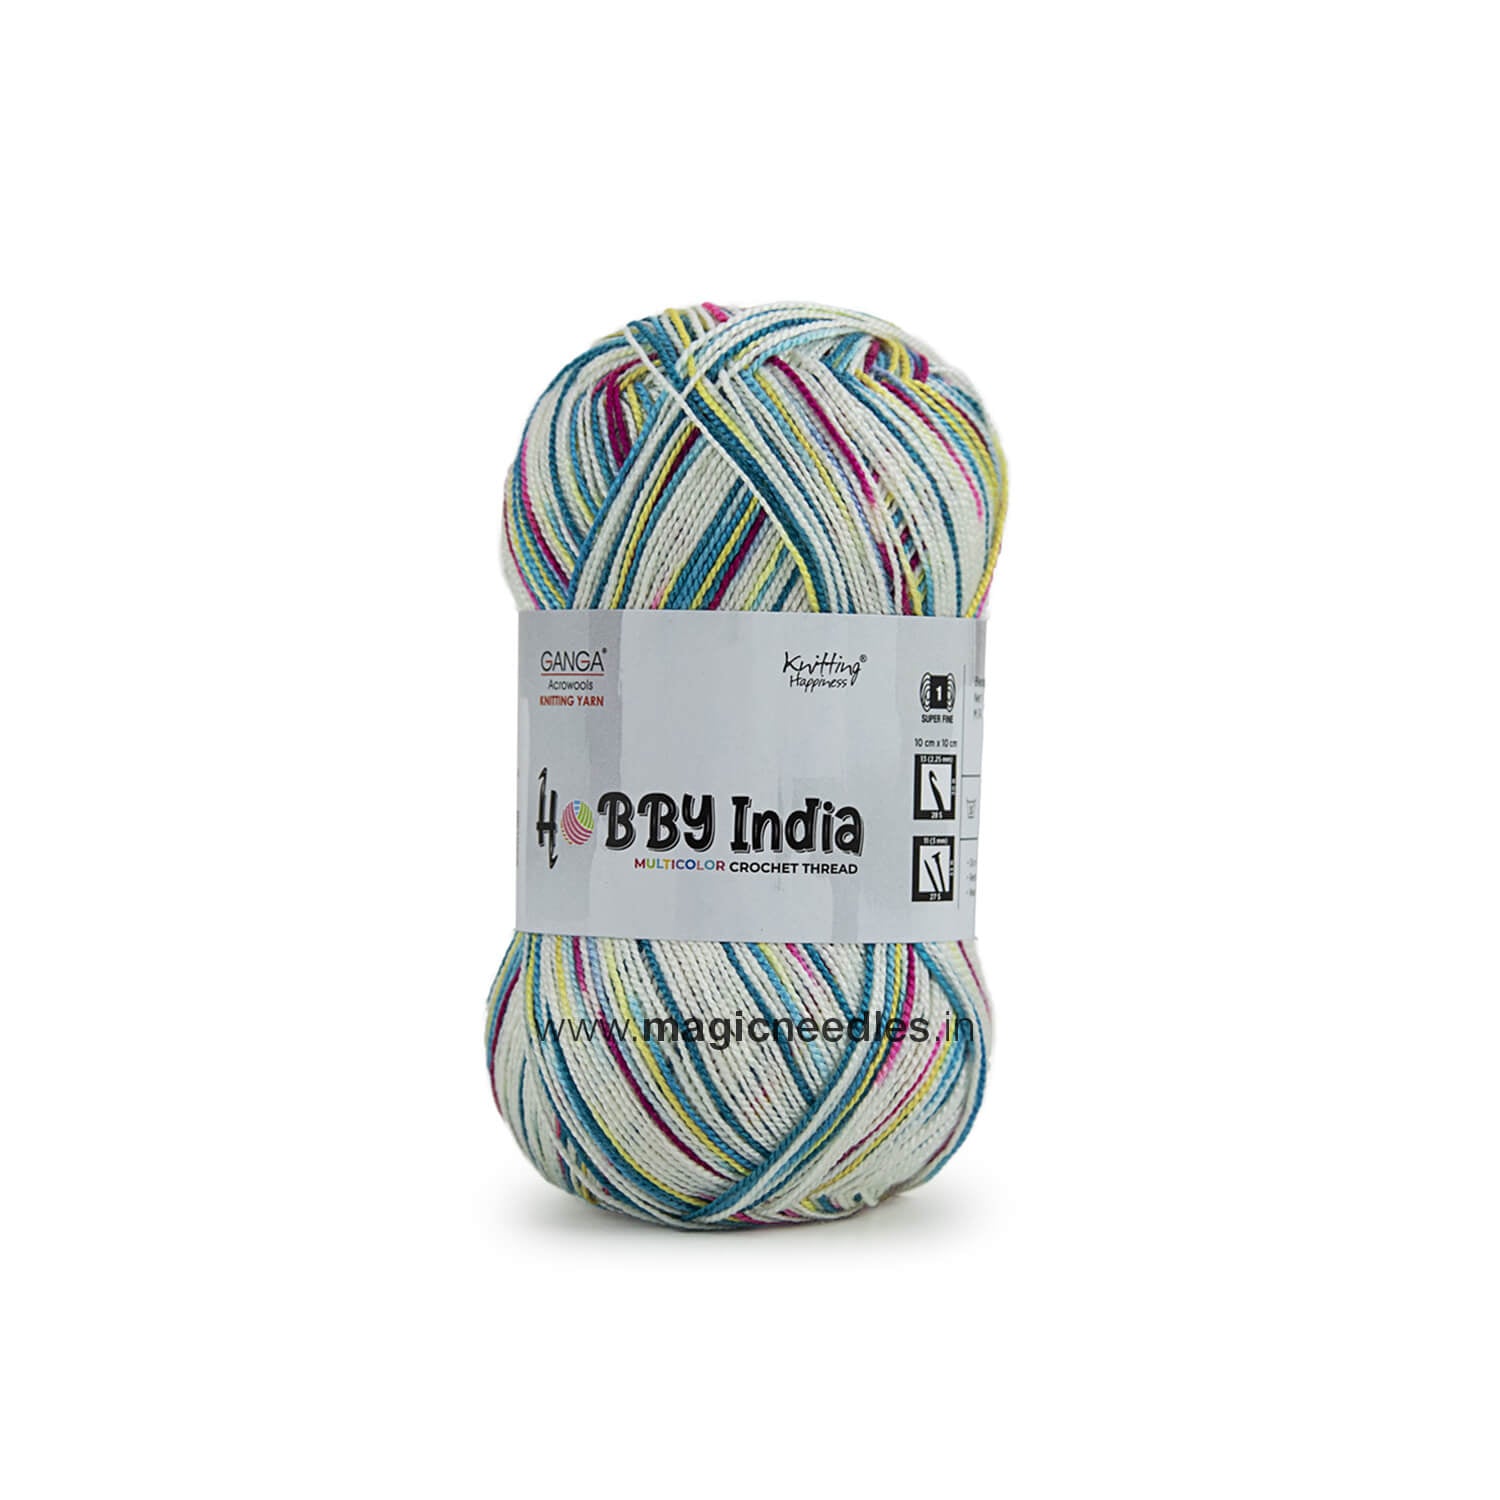 Ganga Hobby India Crochet Thread - Multi Color 41